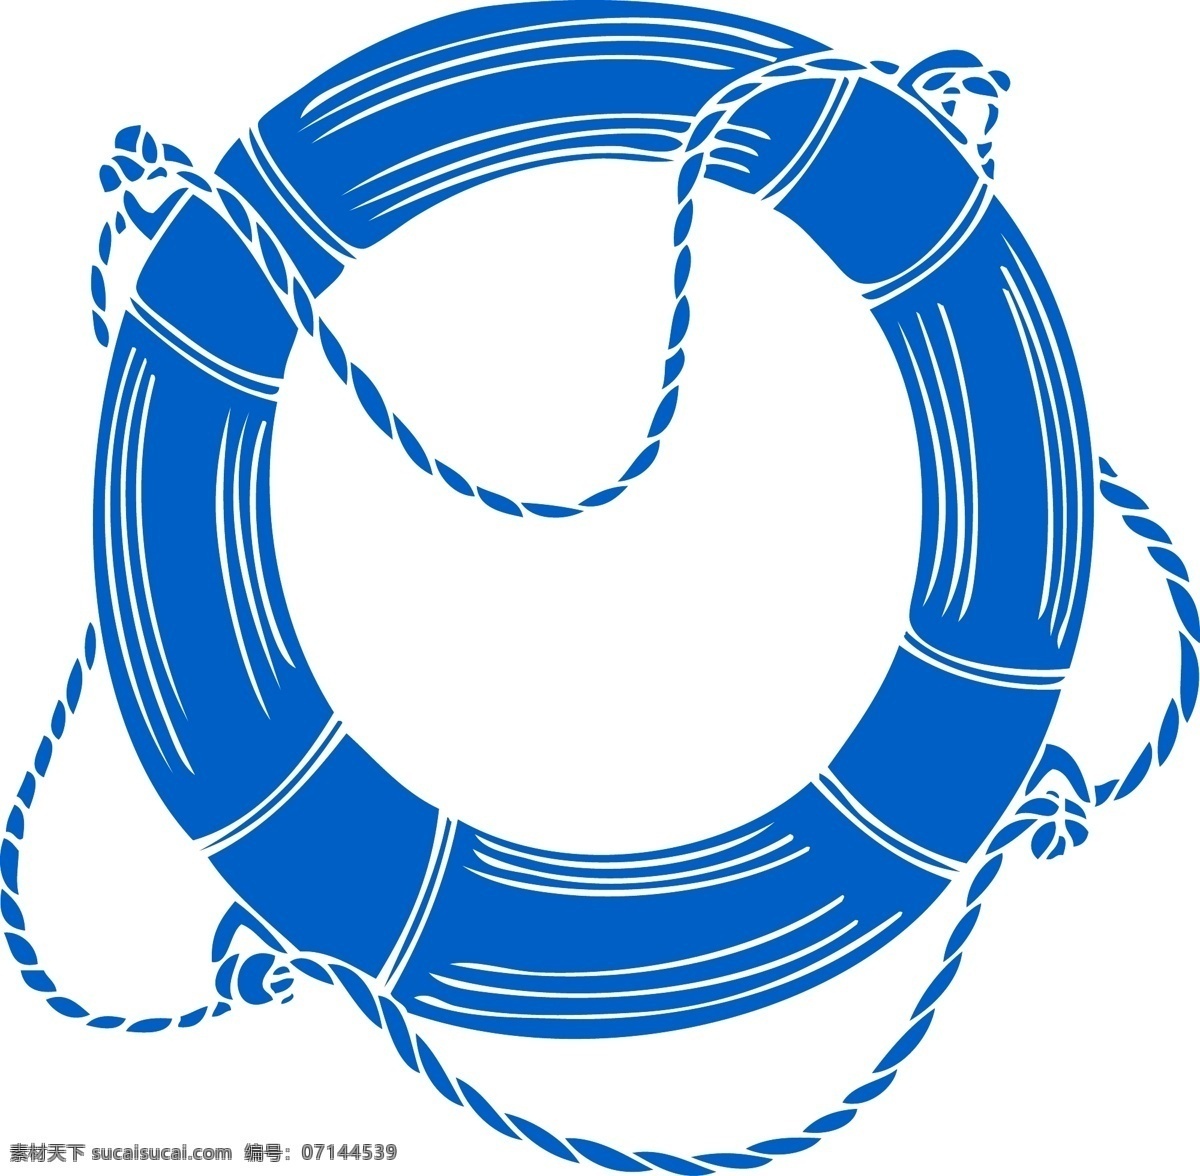 救生圈素材 救生圈 卡通 海洋 简约 装饰图案 手绘 蓝色救生圈